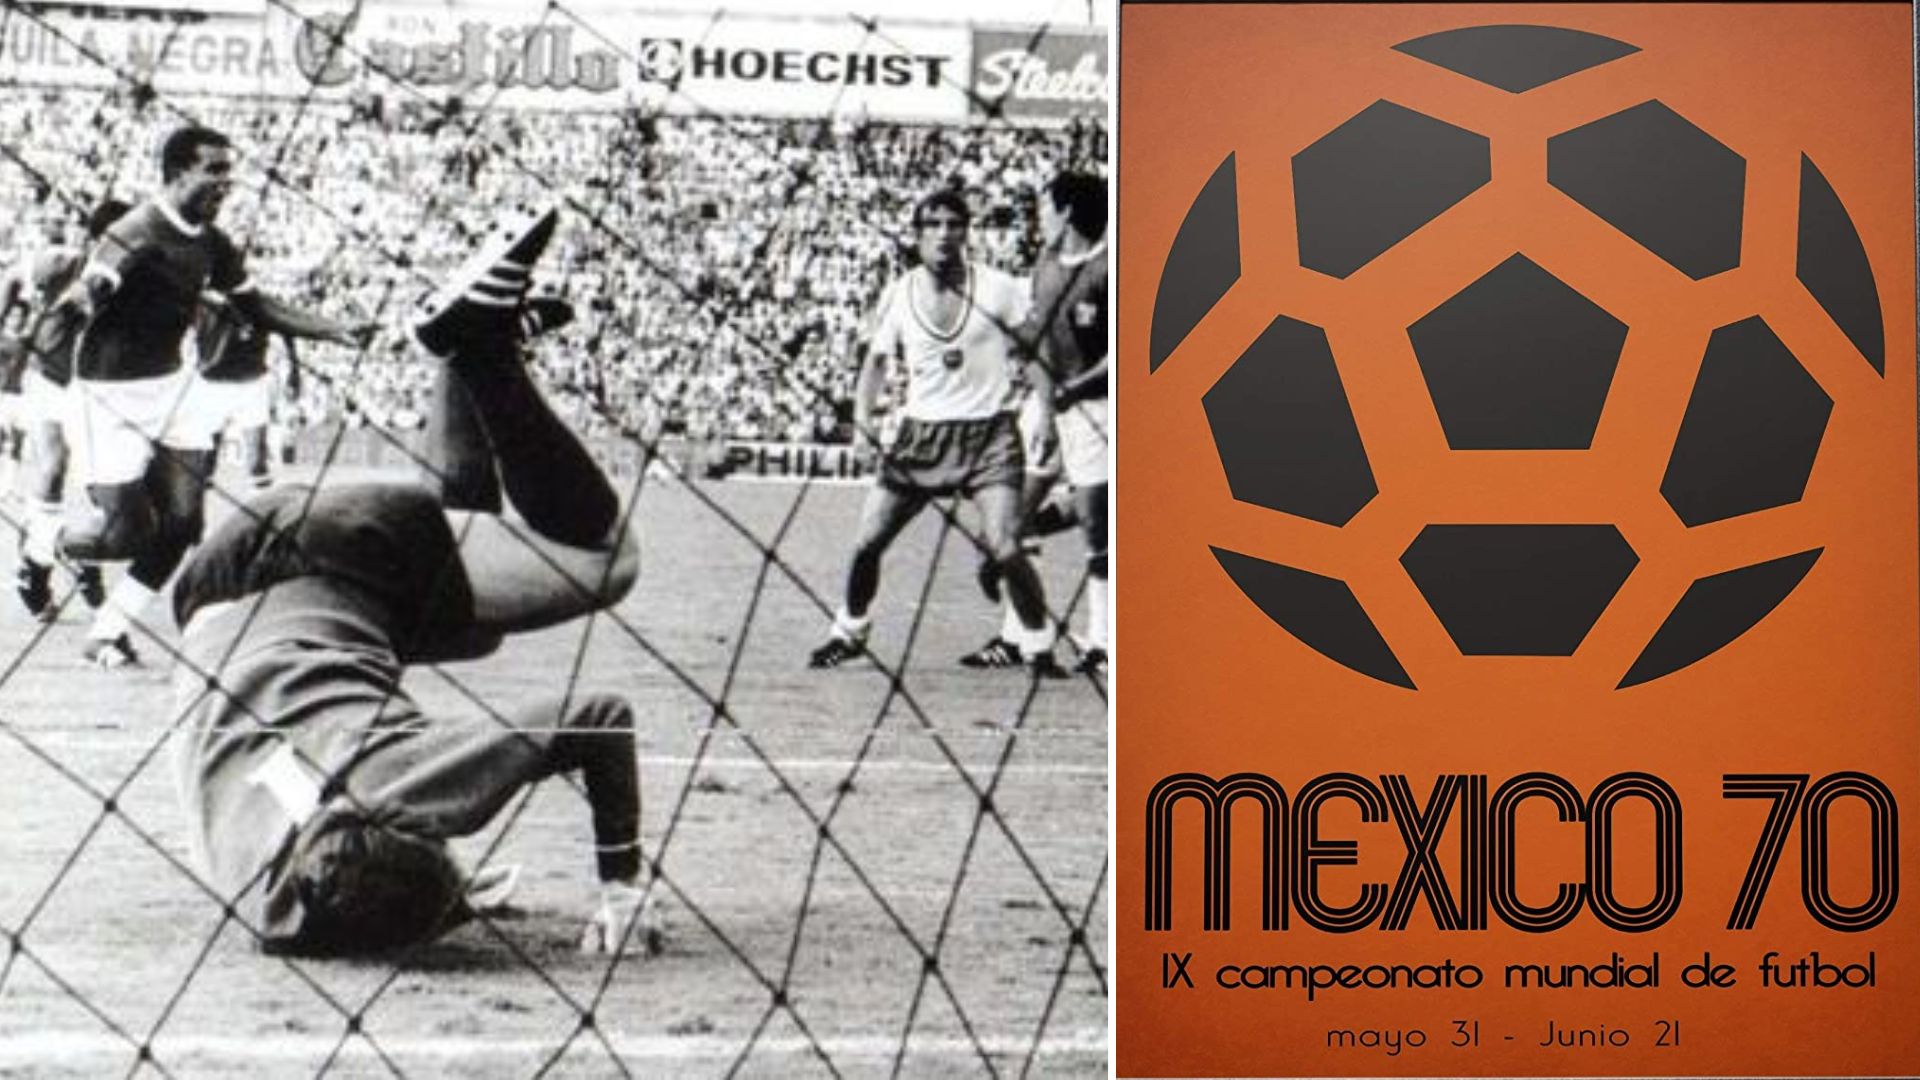 Teófilo Cubillas en los Mundiales: el gol que le devolvíó la sonrisa a los peruanos luego del devastador terremoto de 1970